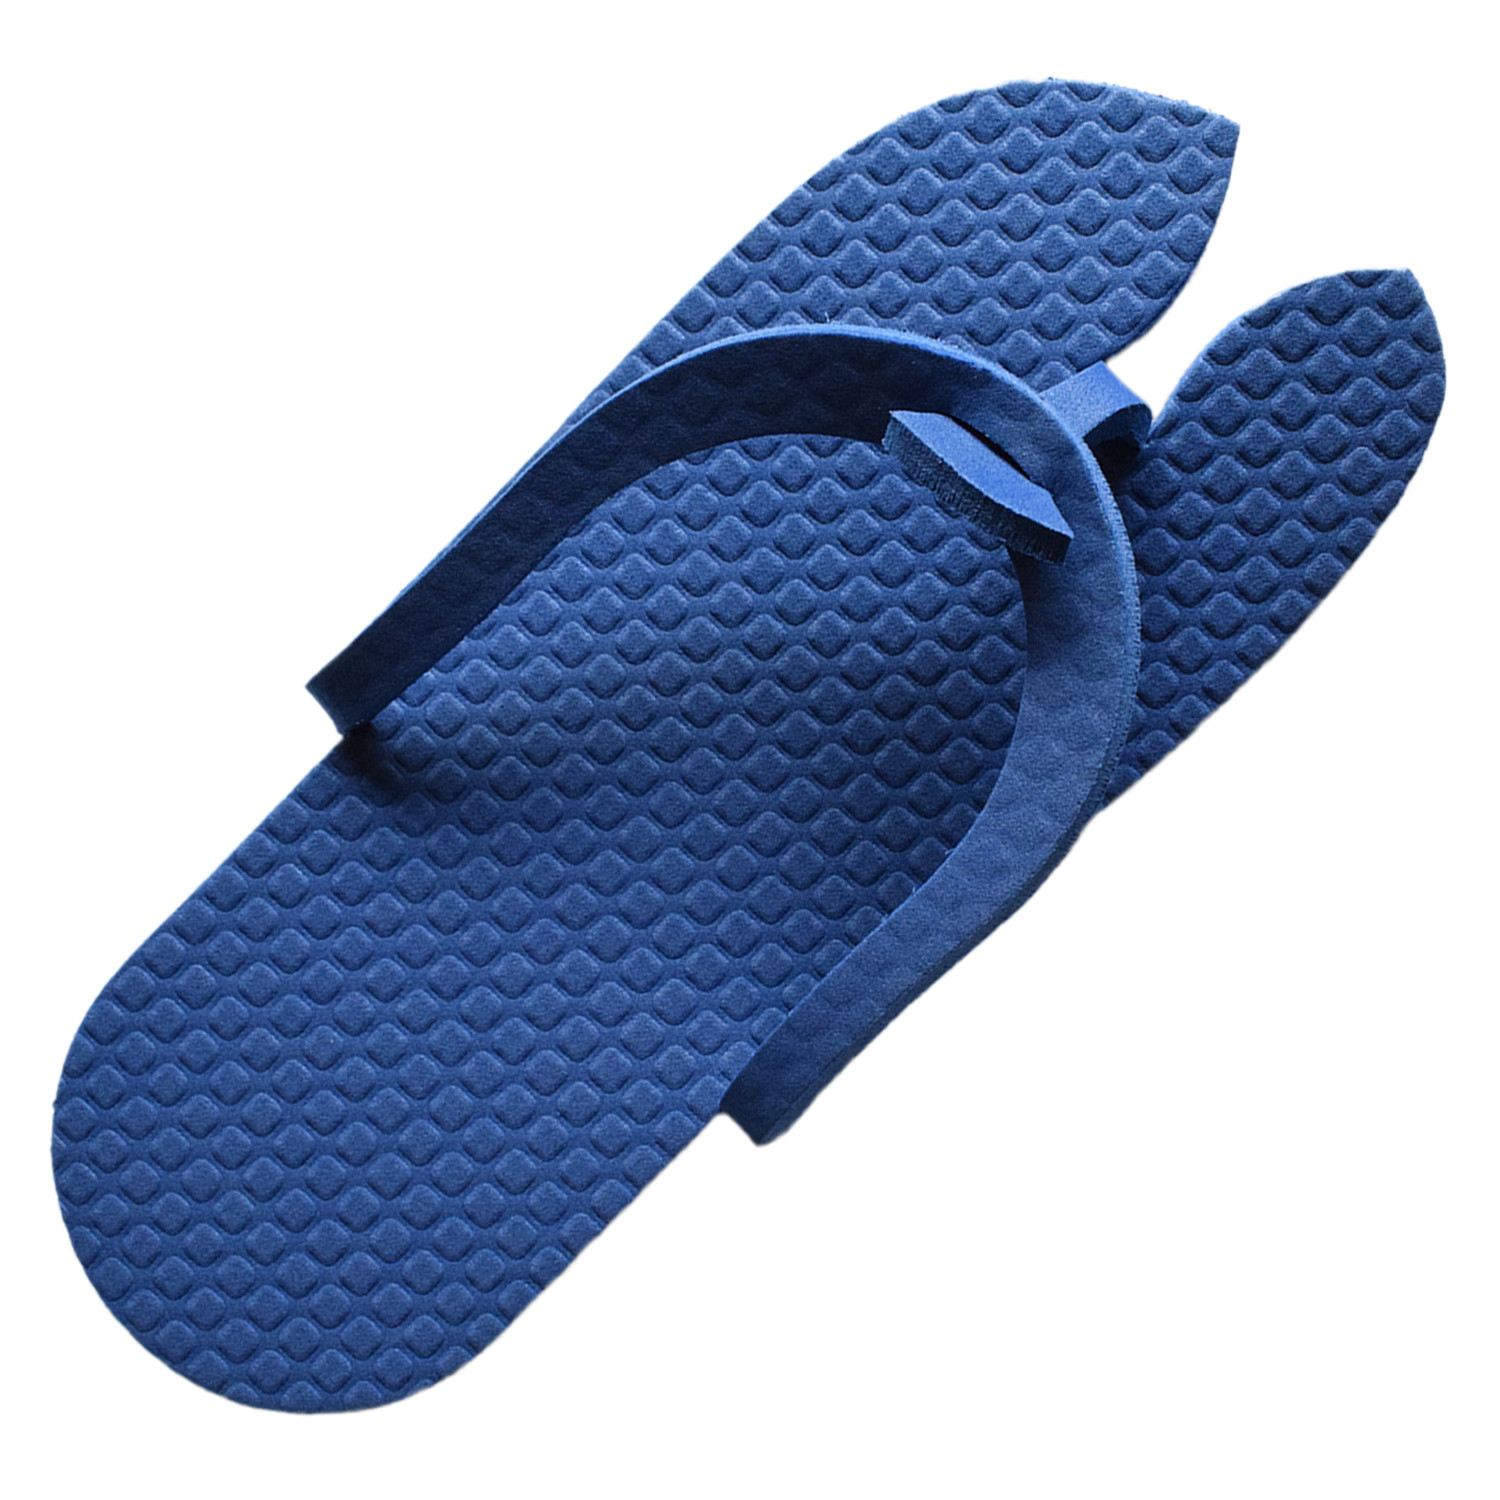 Kuber Industries Rubber Bathroom Slipper For Men & Women (Blue) 54KM4204